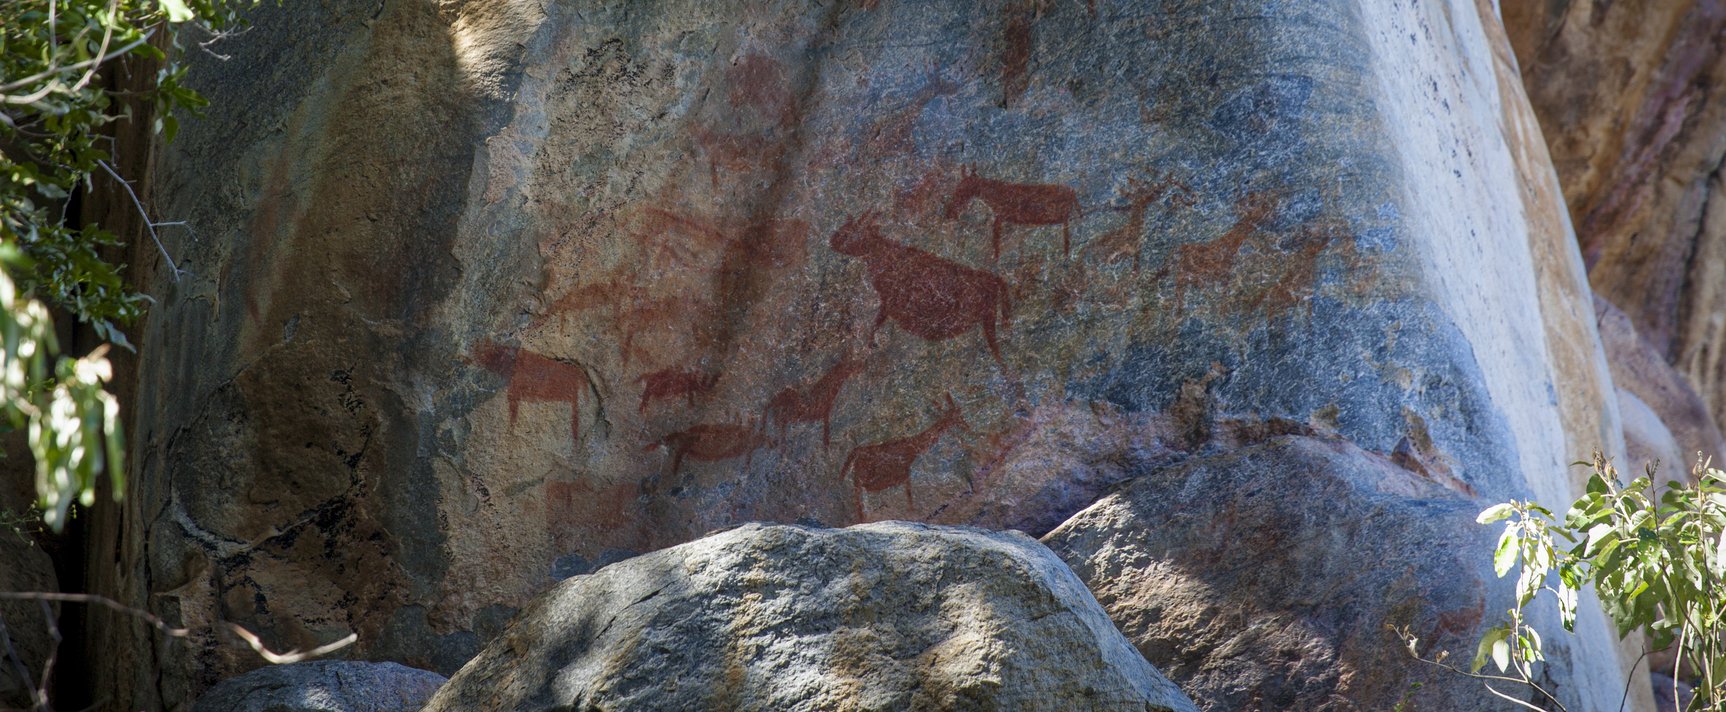 Történelmi jelentőségű felfedezést akartak eltitkolni, a 3500 éves jelekre szokatlan helyen bukkantak rá